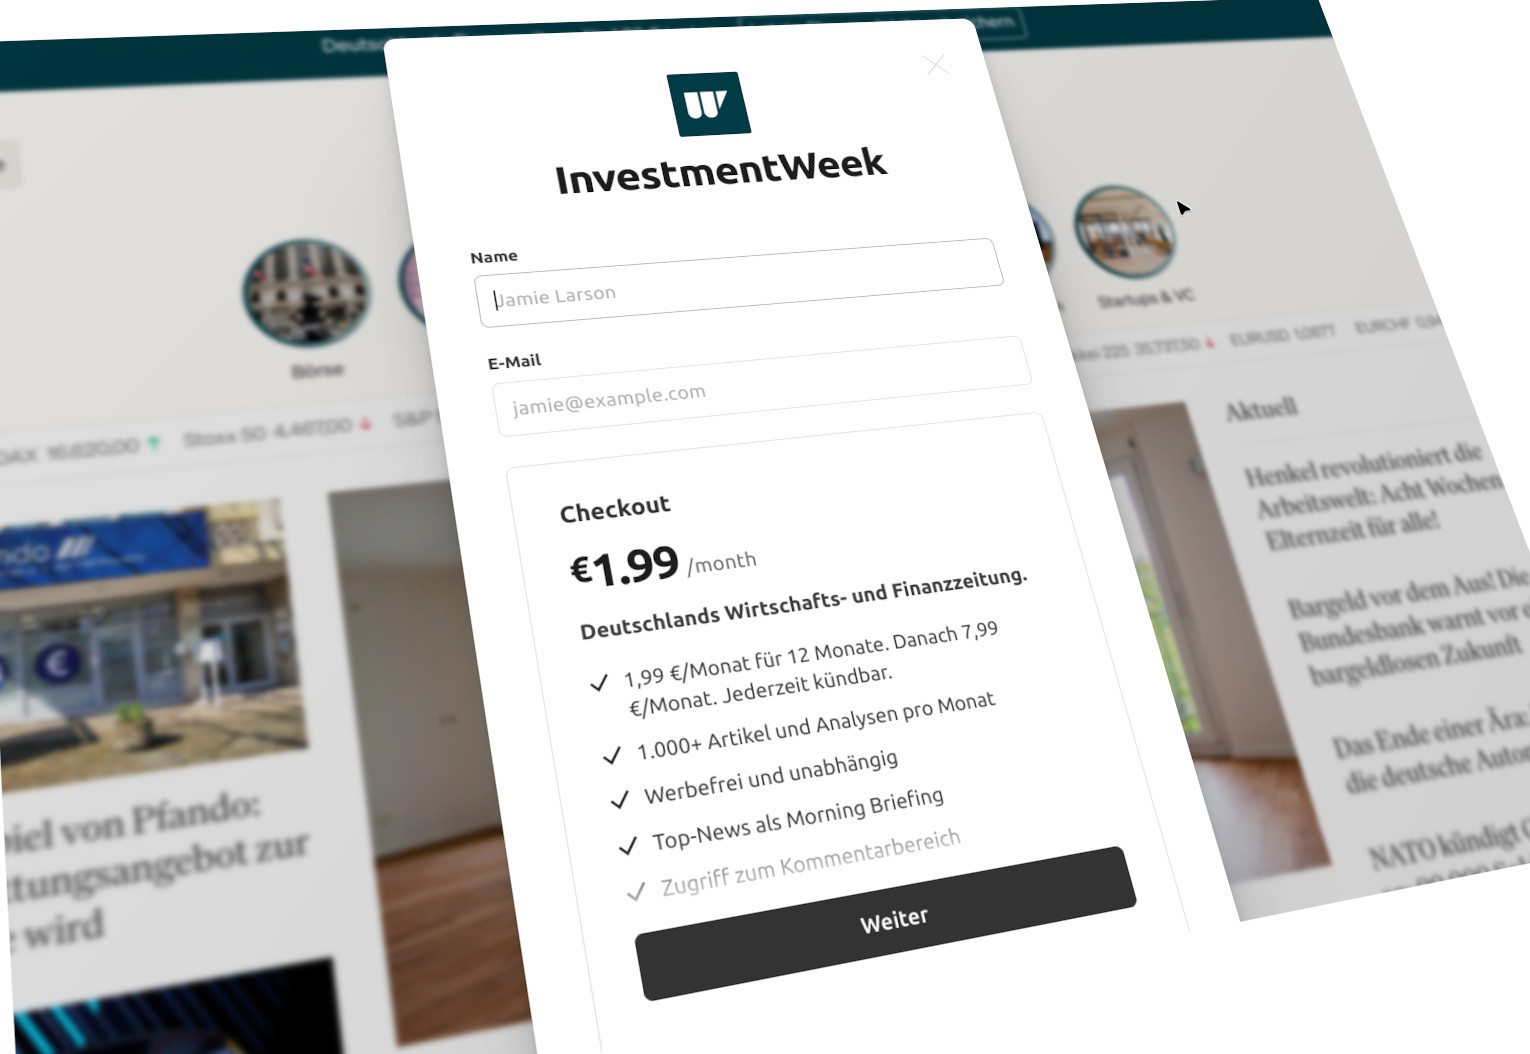 InvestmentWeek.com: Warum es die Go-to-Quelle für Investoren im digitalen Zeitalter ist